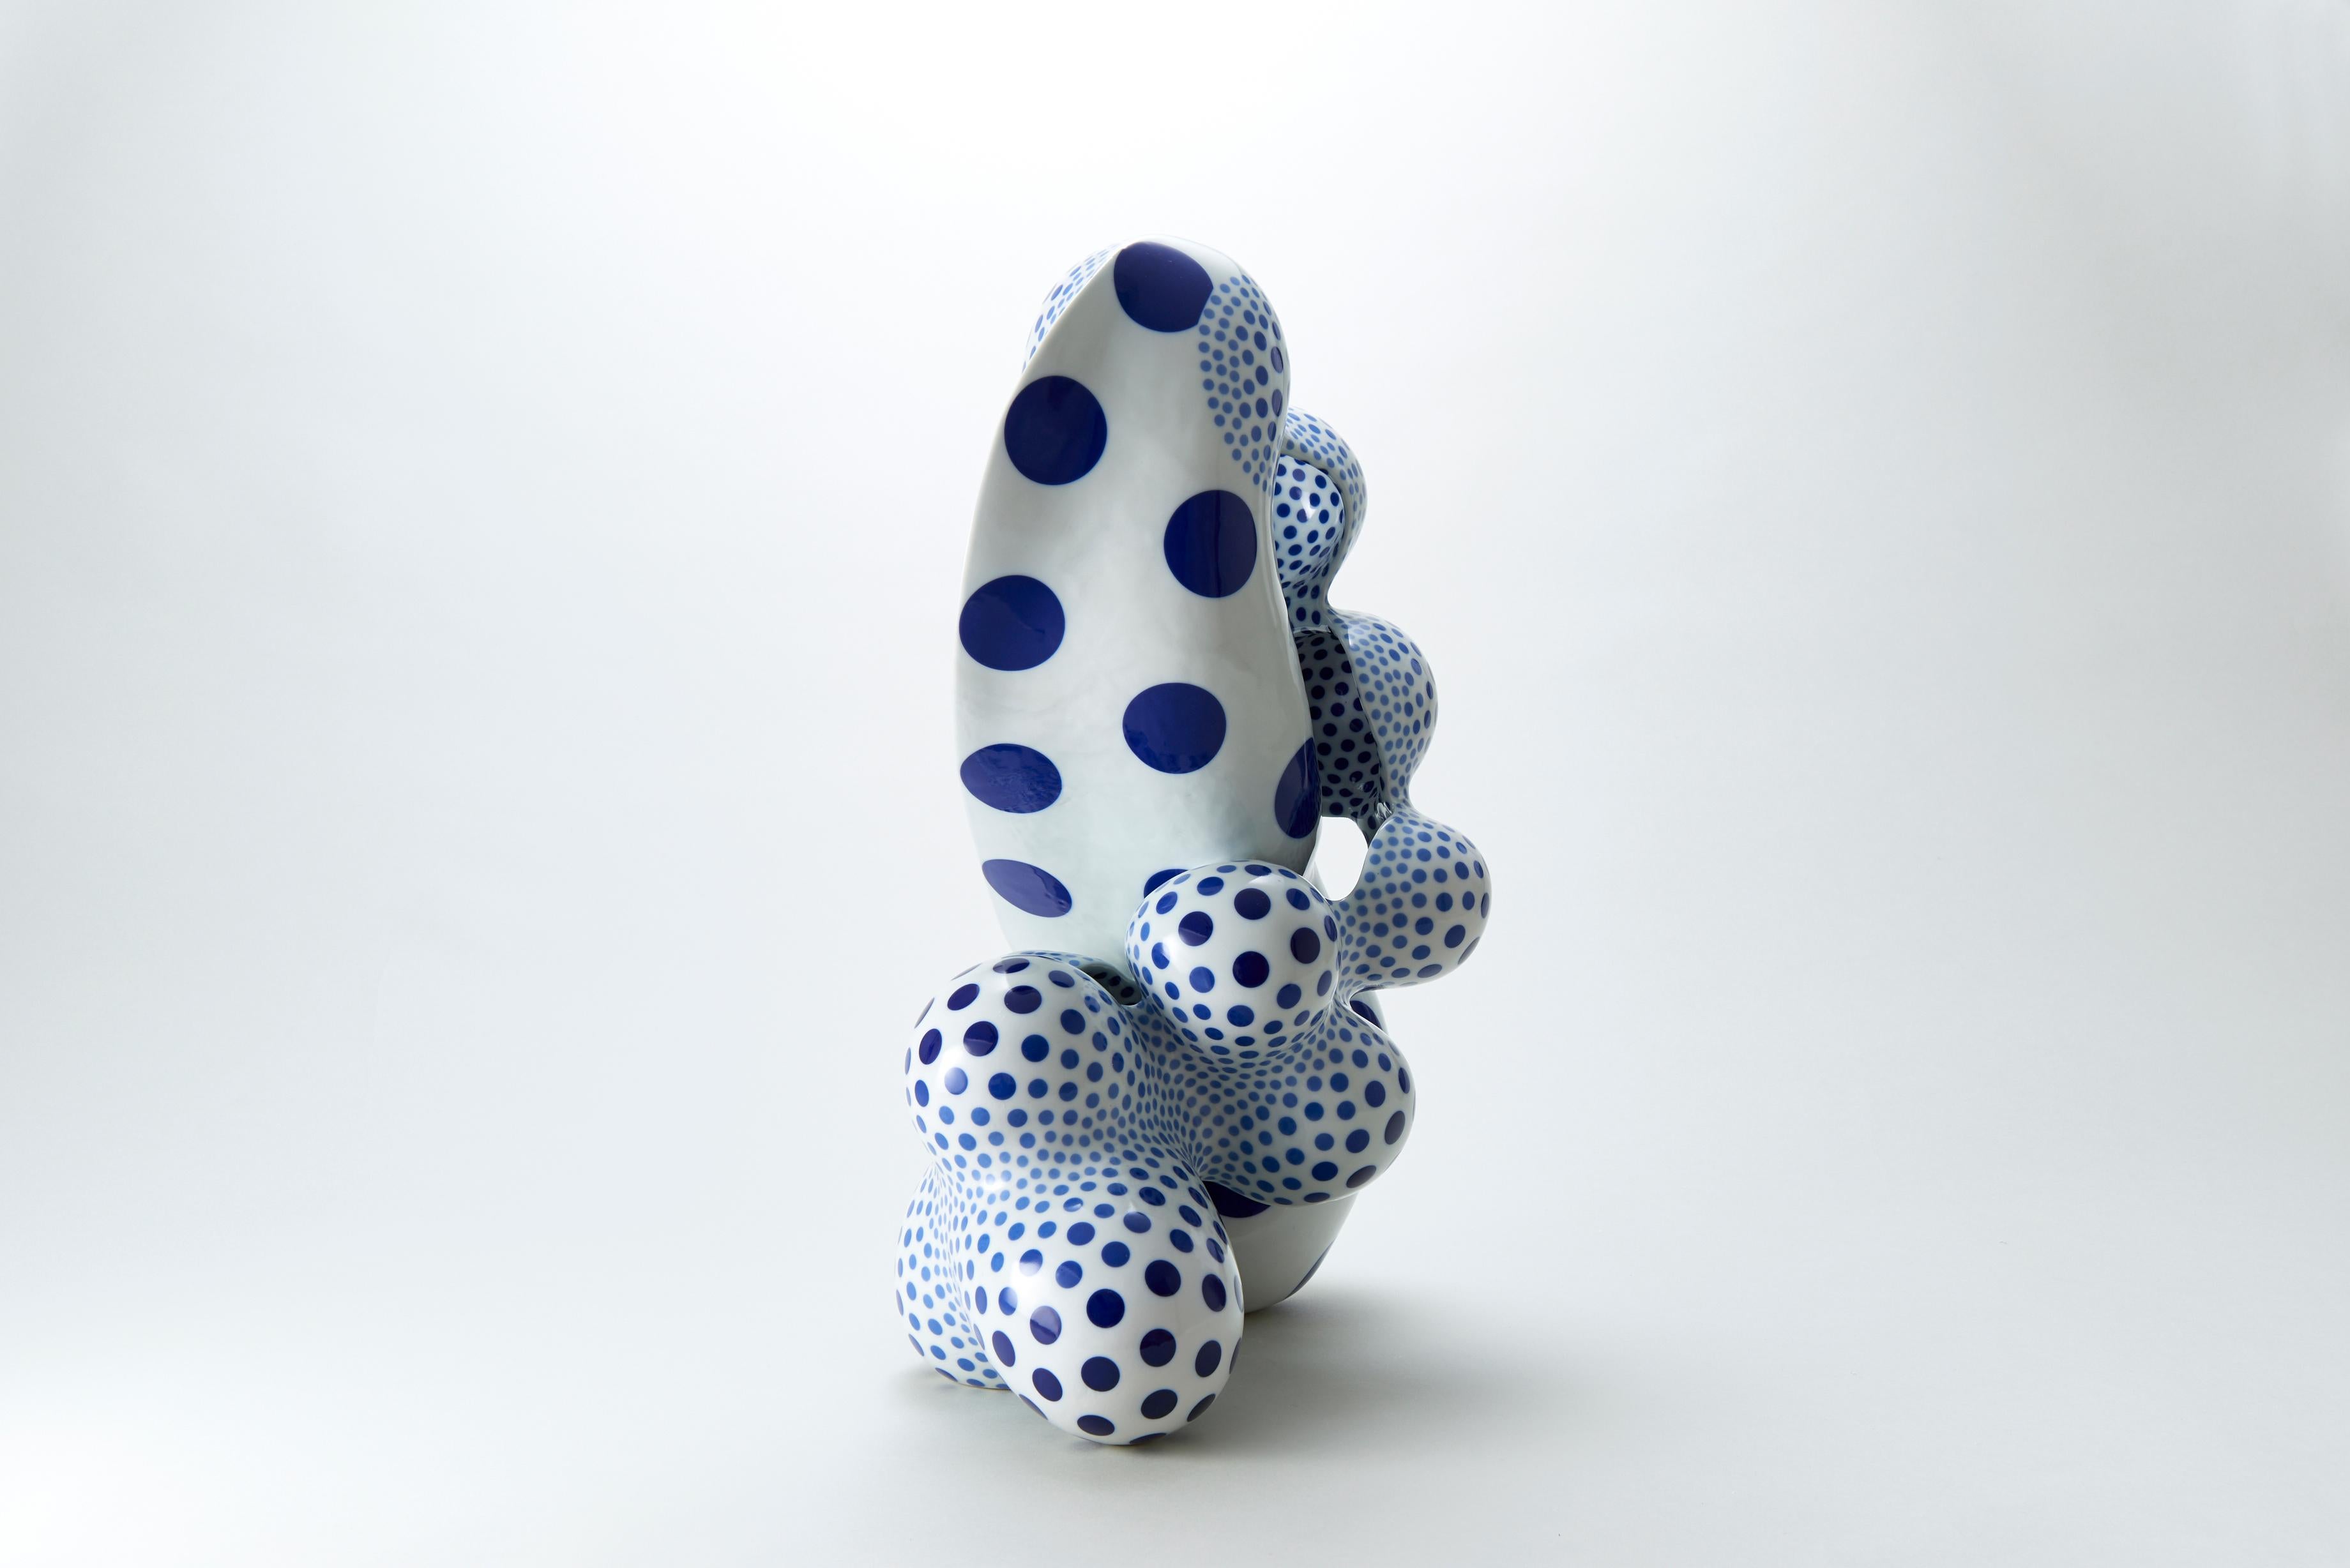 L'artiste japonais Harumi Nakashima crée des sculptures en céramique de forme libre qui présentent des caractéristiques à la fois organiques et psychédéliques. Nakashima, surtout connu pour ses formes géométriques bizarres magnifiquement structurées